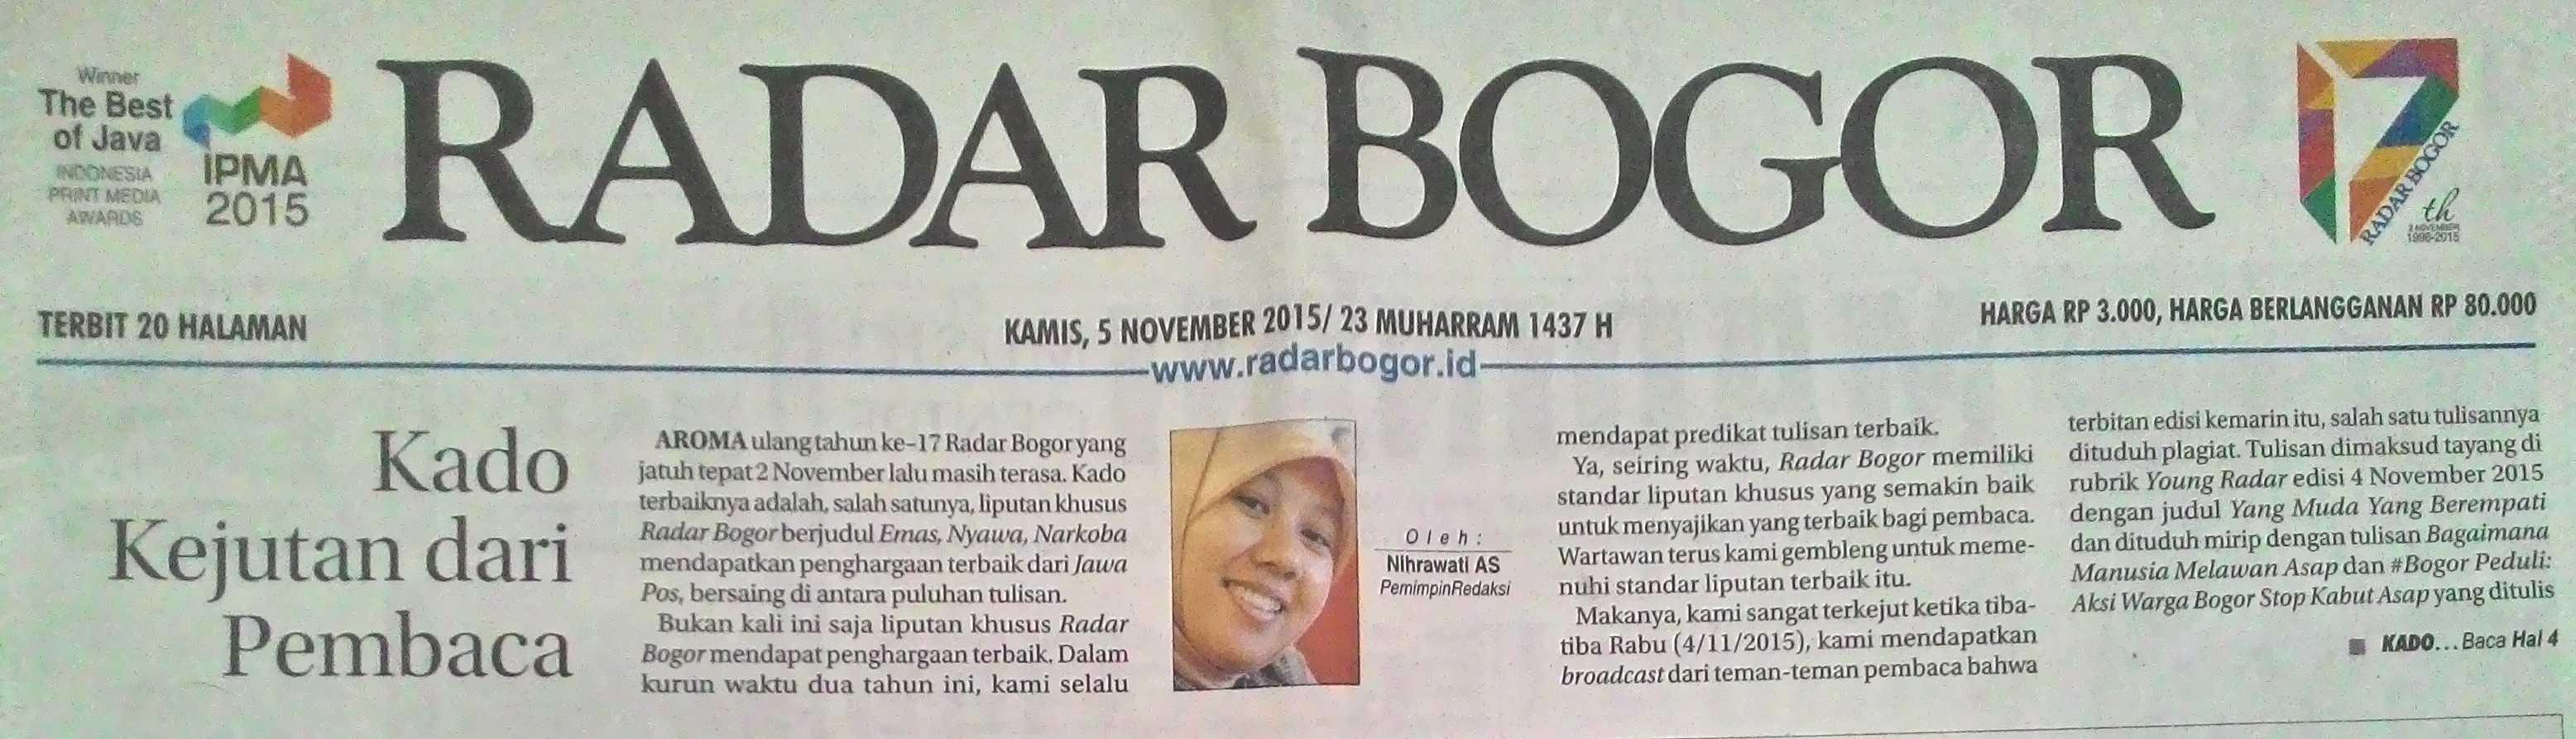 Klarifikasi dan Maaf Radar Bogor Kado Indah dari Penulis Kompasiana oleh Achmad Siddik Halaman all Kompasiana